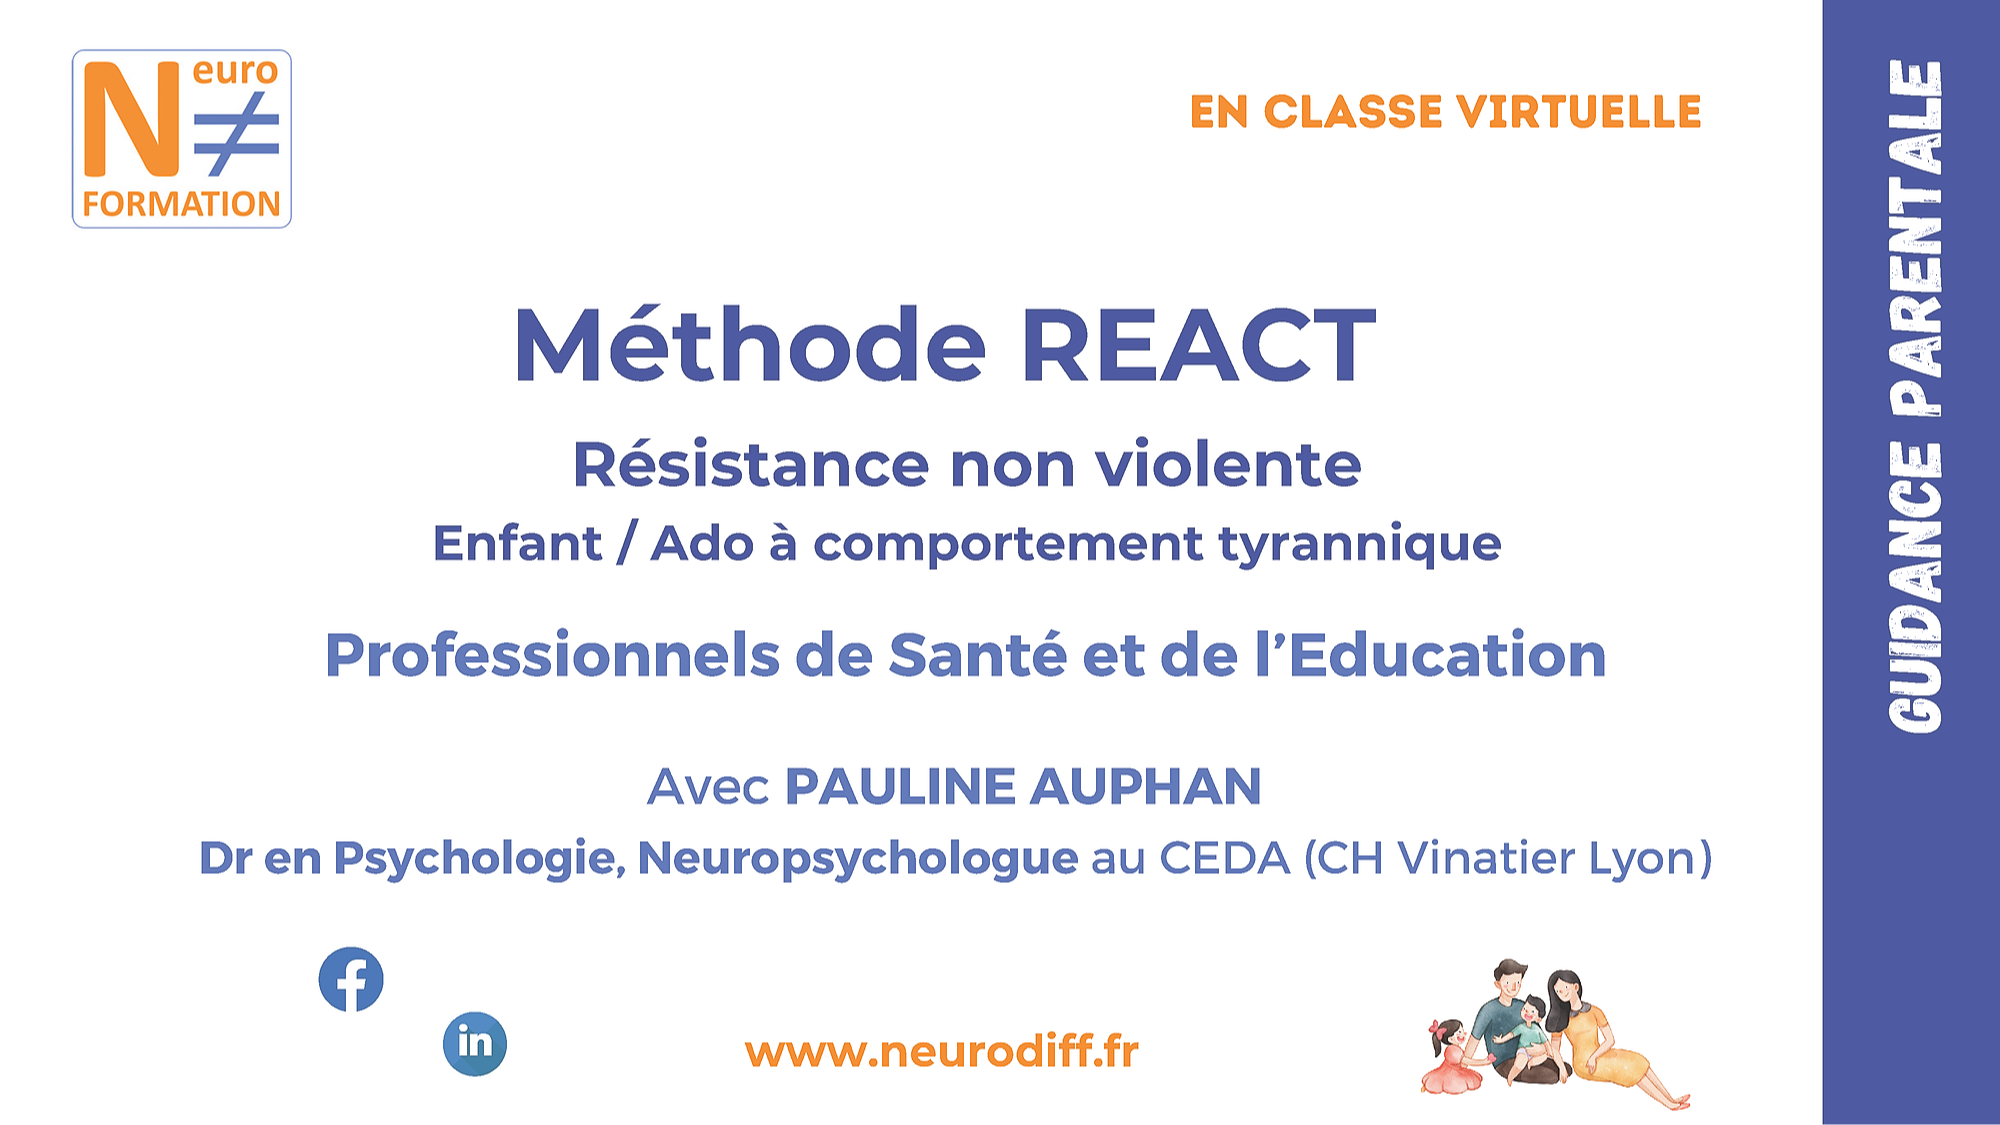 Représentation de la formation : Méthode REACT (Résistance non violente)